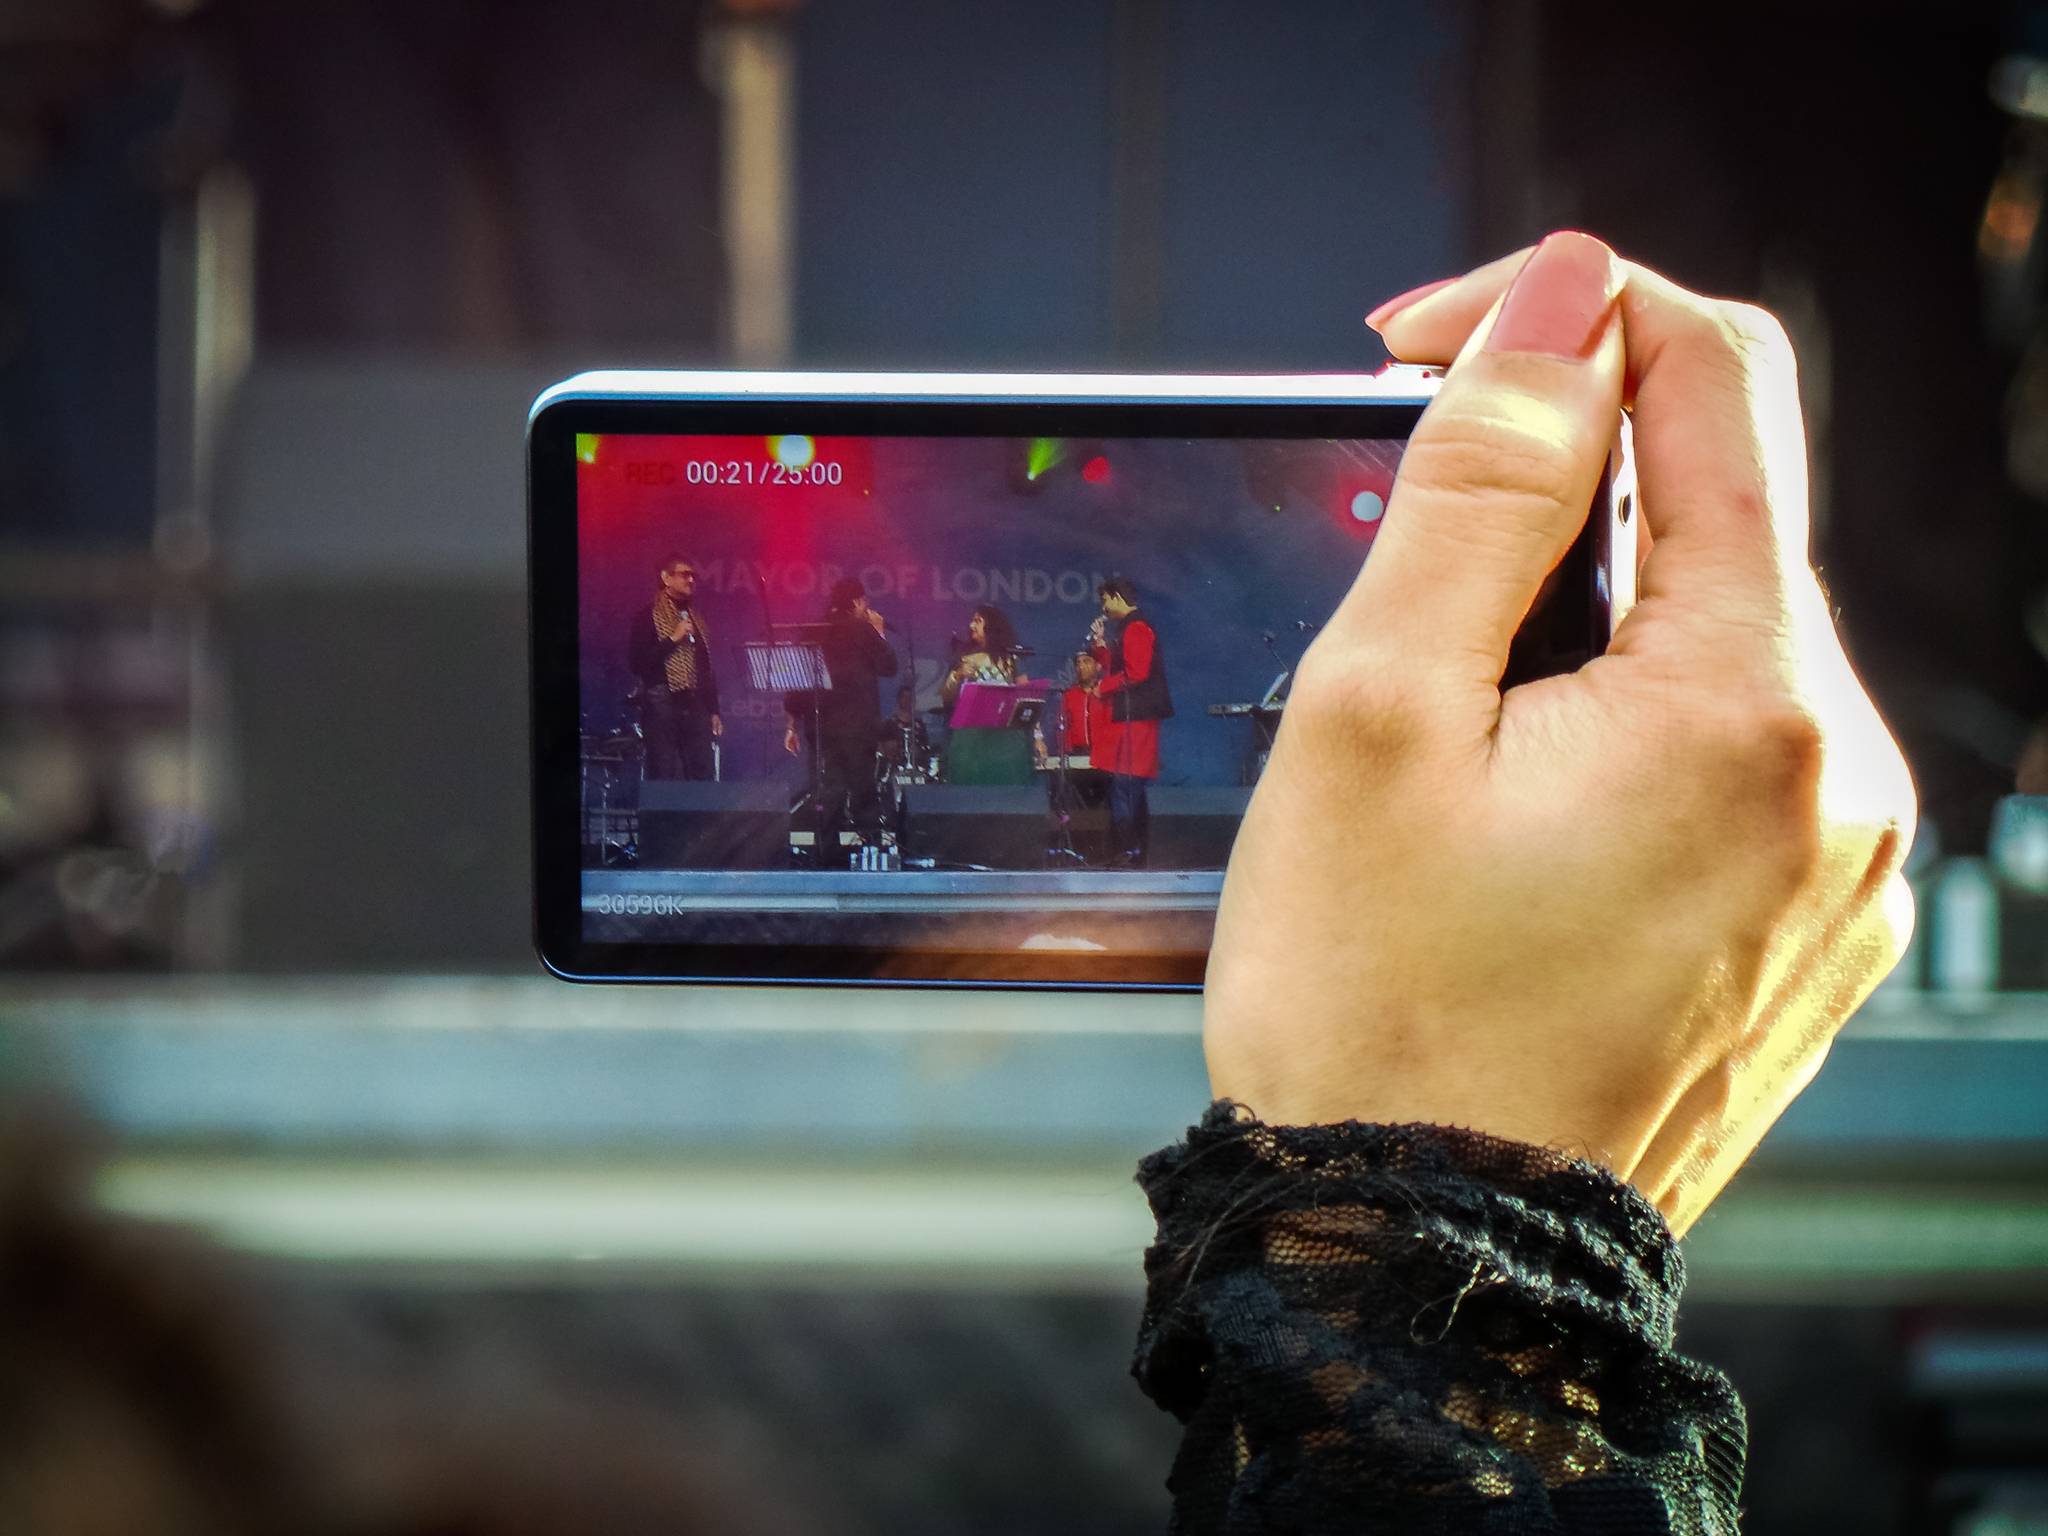 Meerkat brings live streaming to smartphones